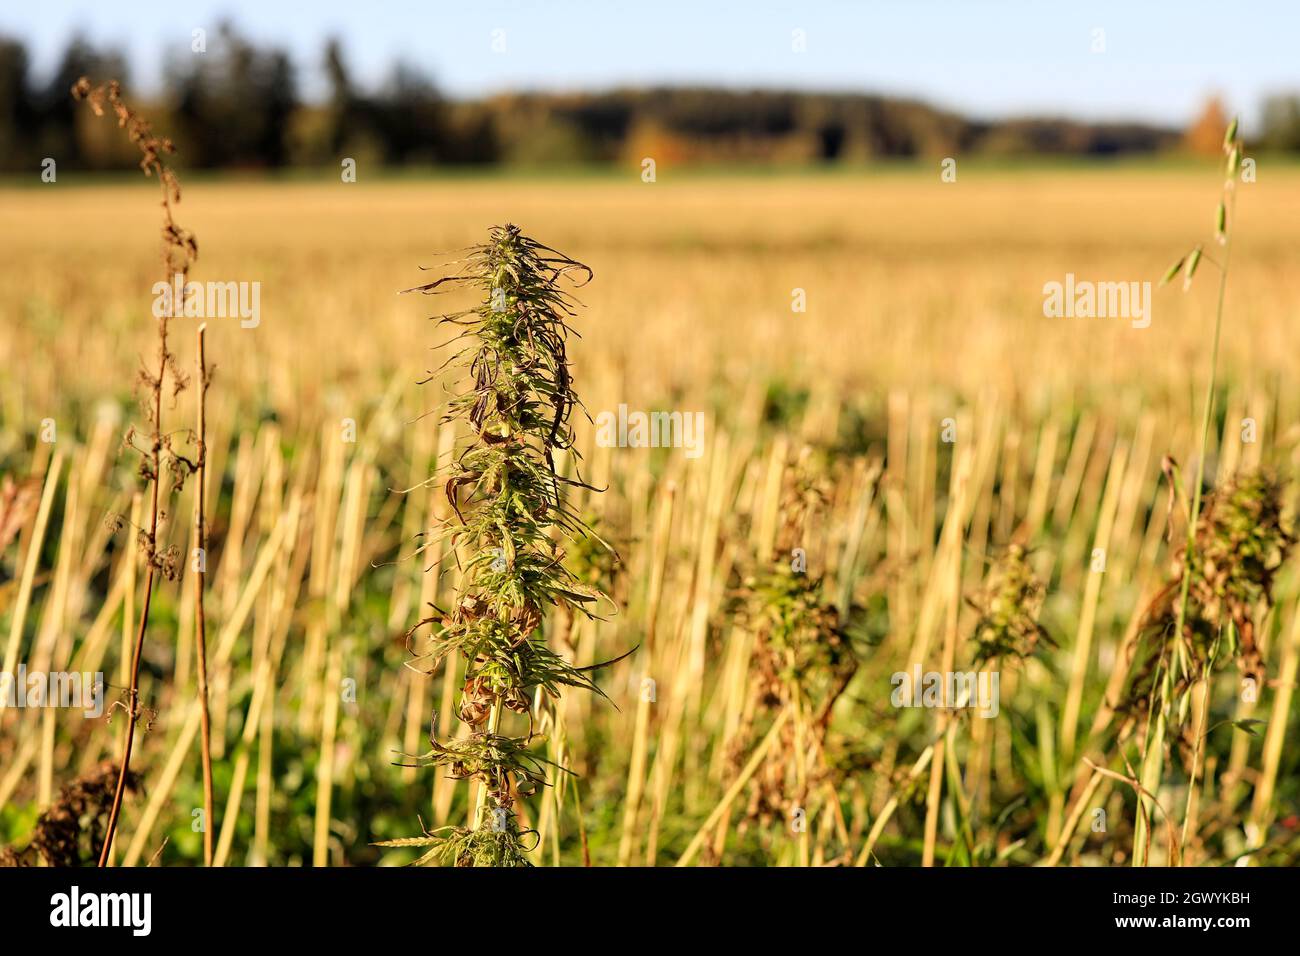 Plante de chanvre industriel à faible teneur en THC, Cannabis sativa, avec champ de chanvre récolté à l'arrière-plan. En Finlande, le chanvre est récolté en septembre-octobre. Banque D'Images